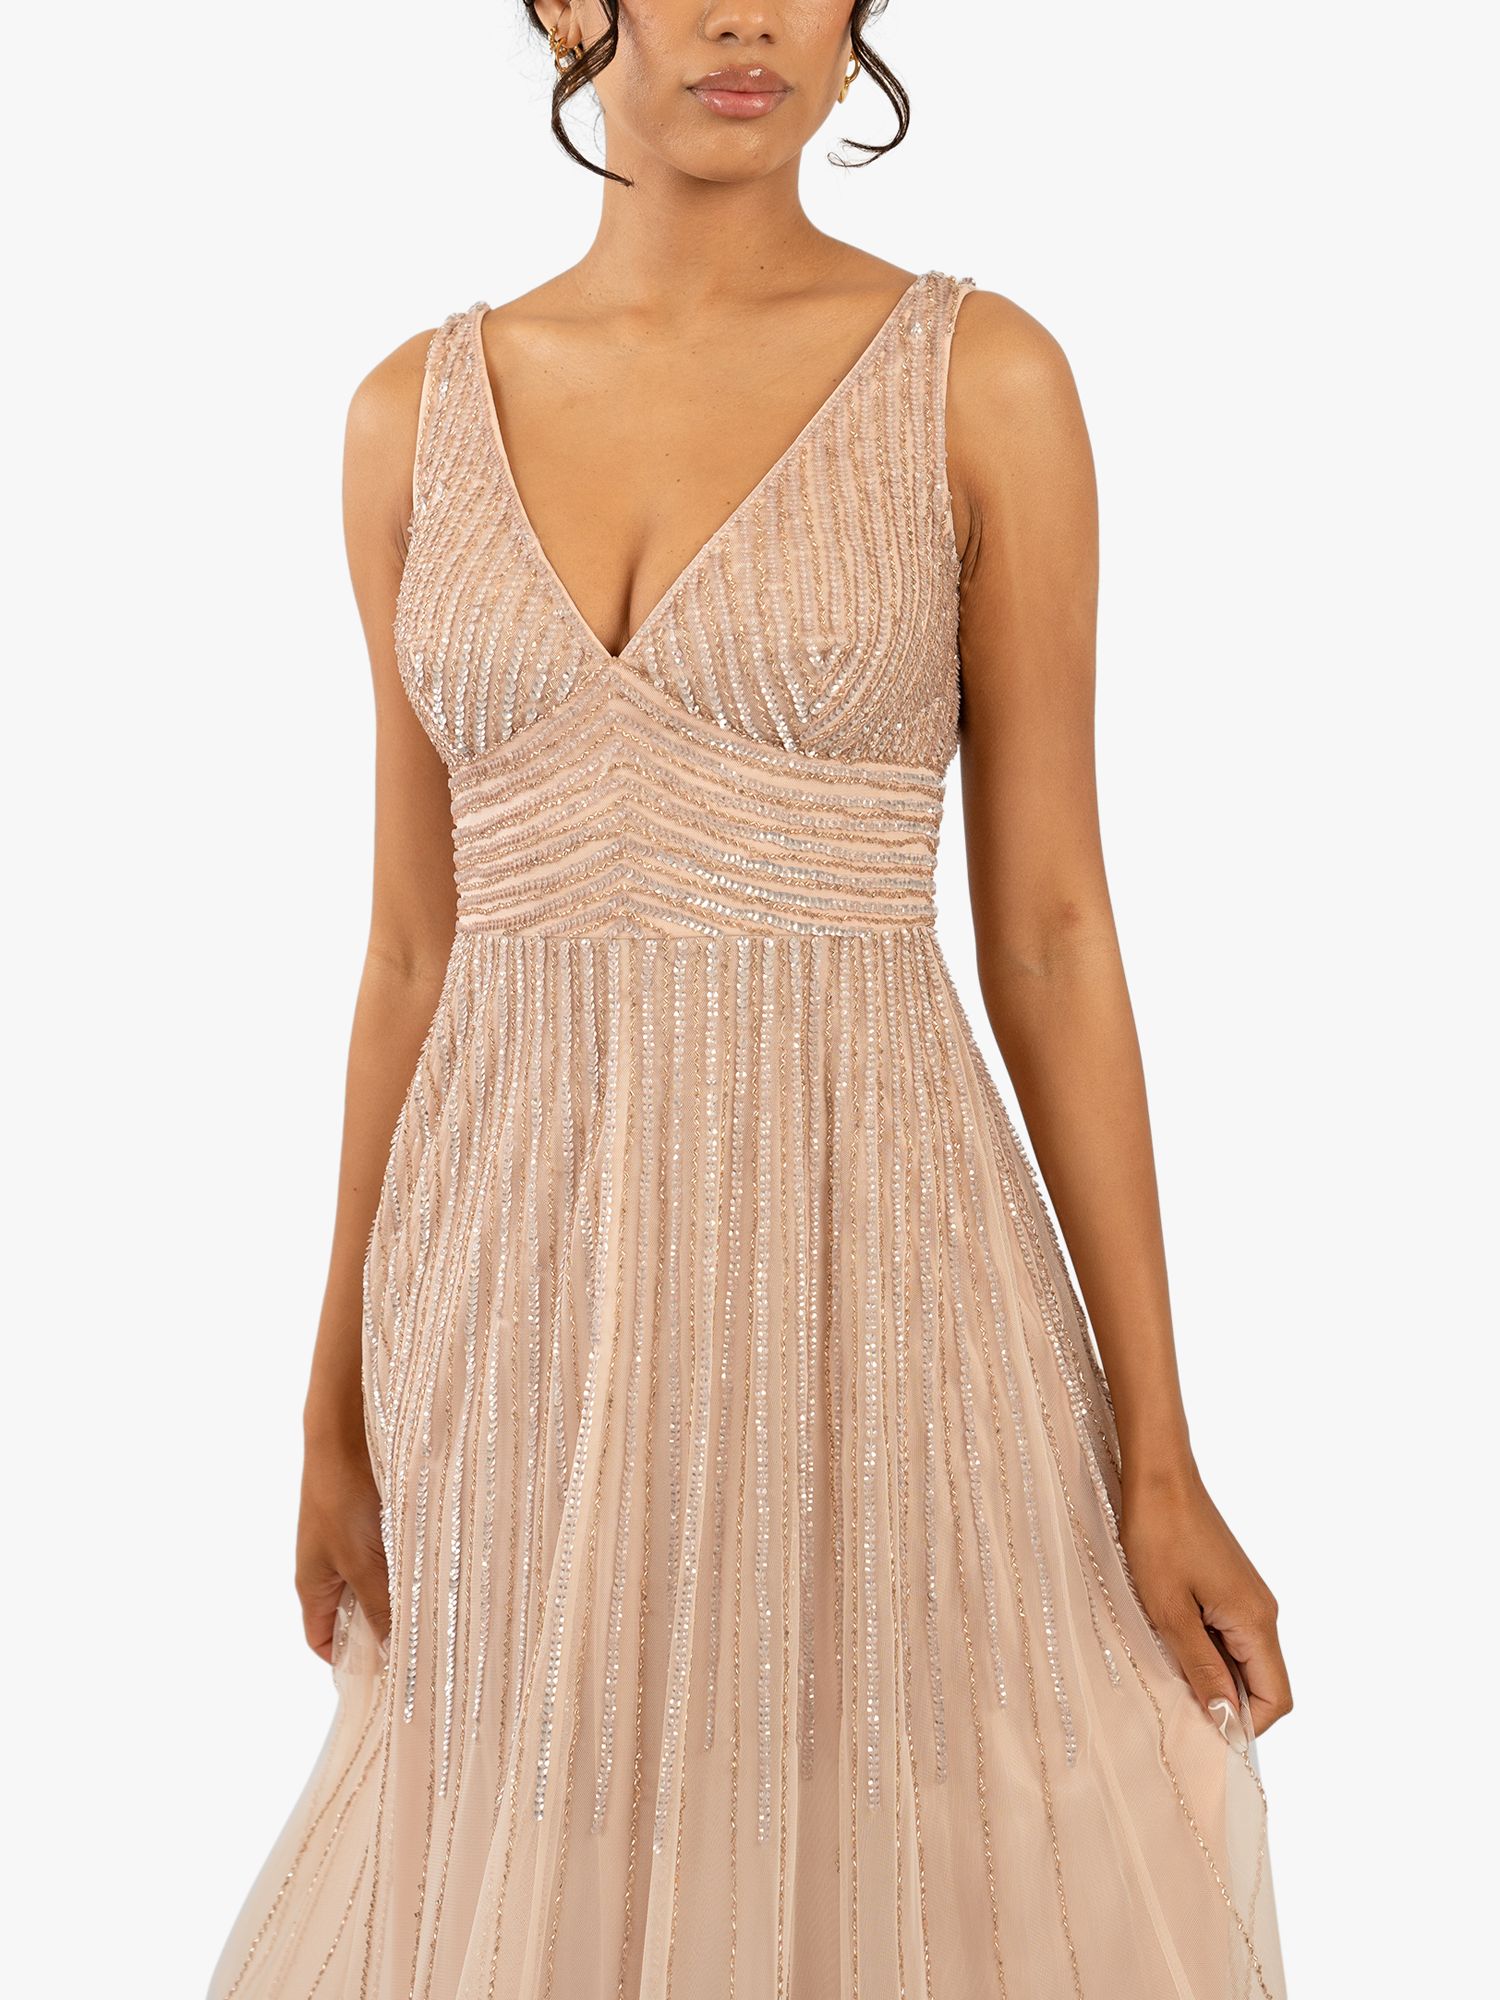 Lace & Beads Lorelai Maxi Dress, Blush Pink, 8